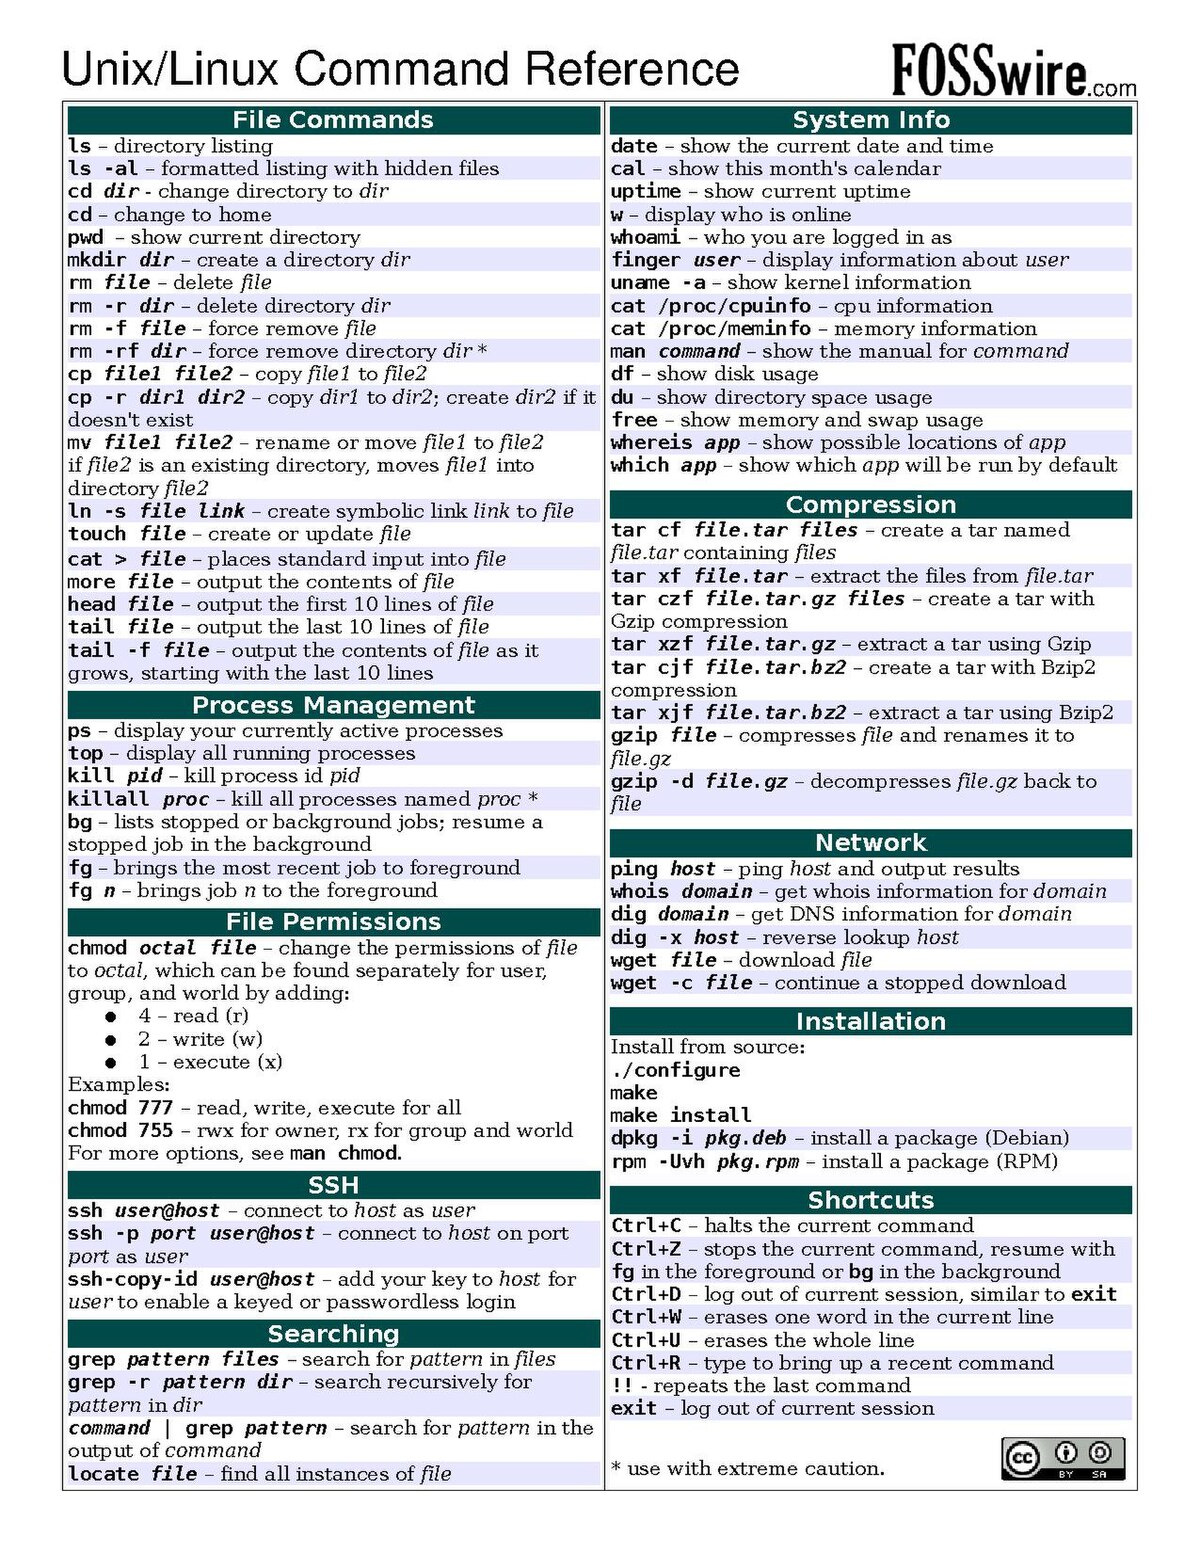 File:Unix command cheatsheet.pdf - Wikimedia Commons